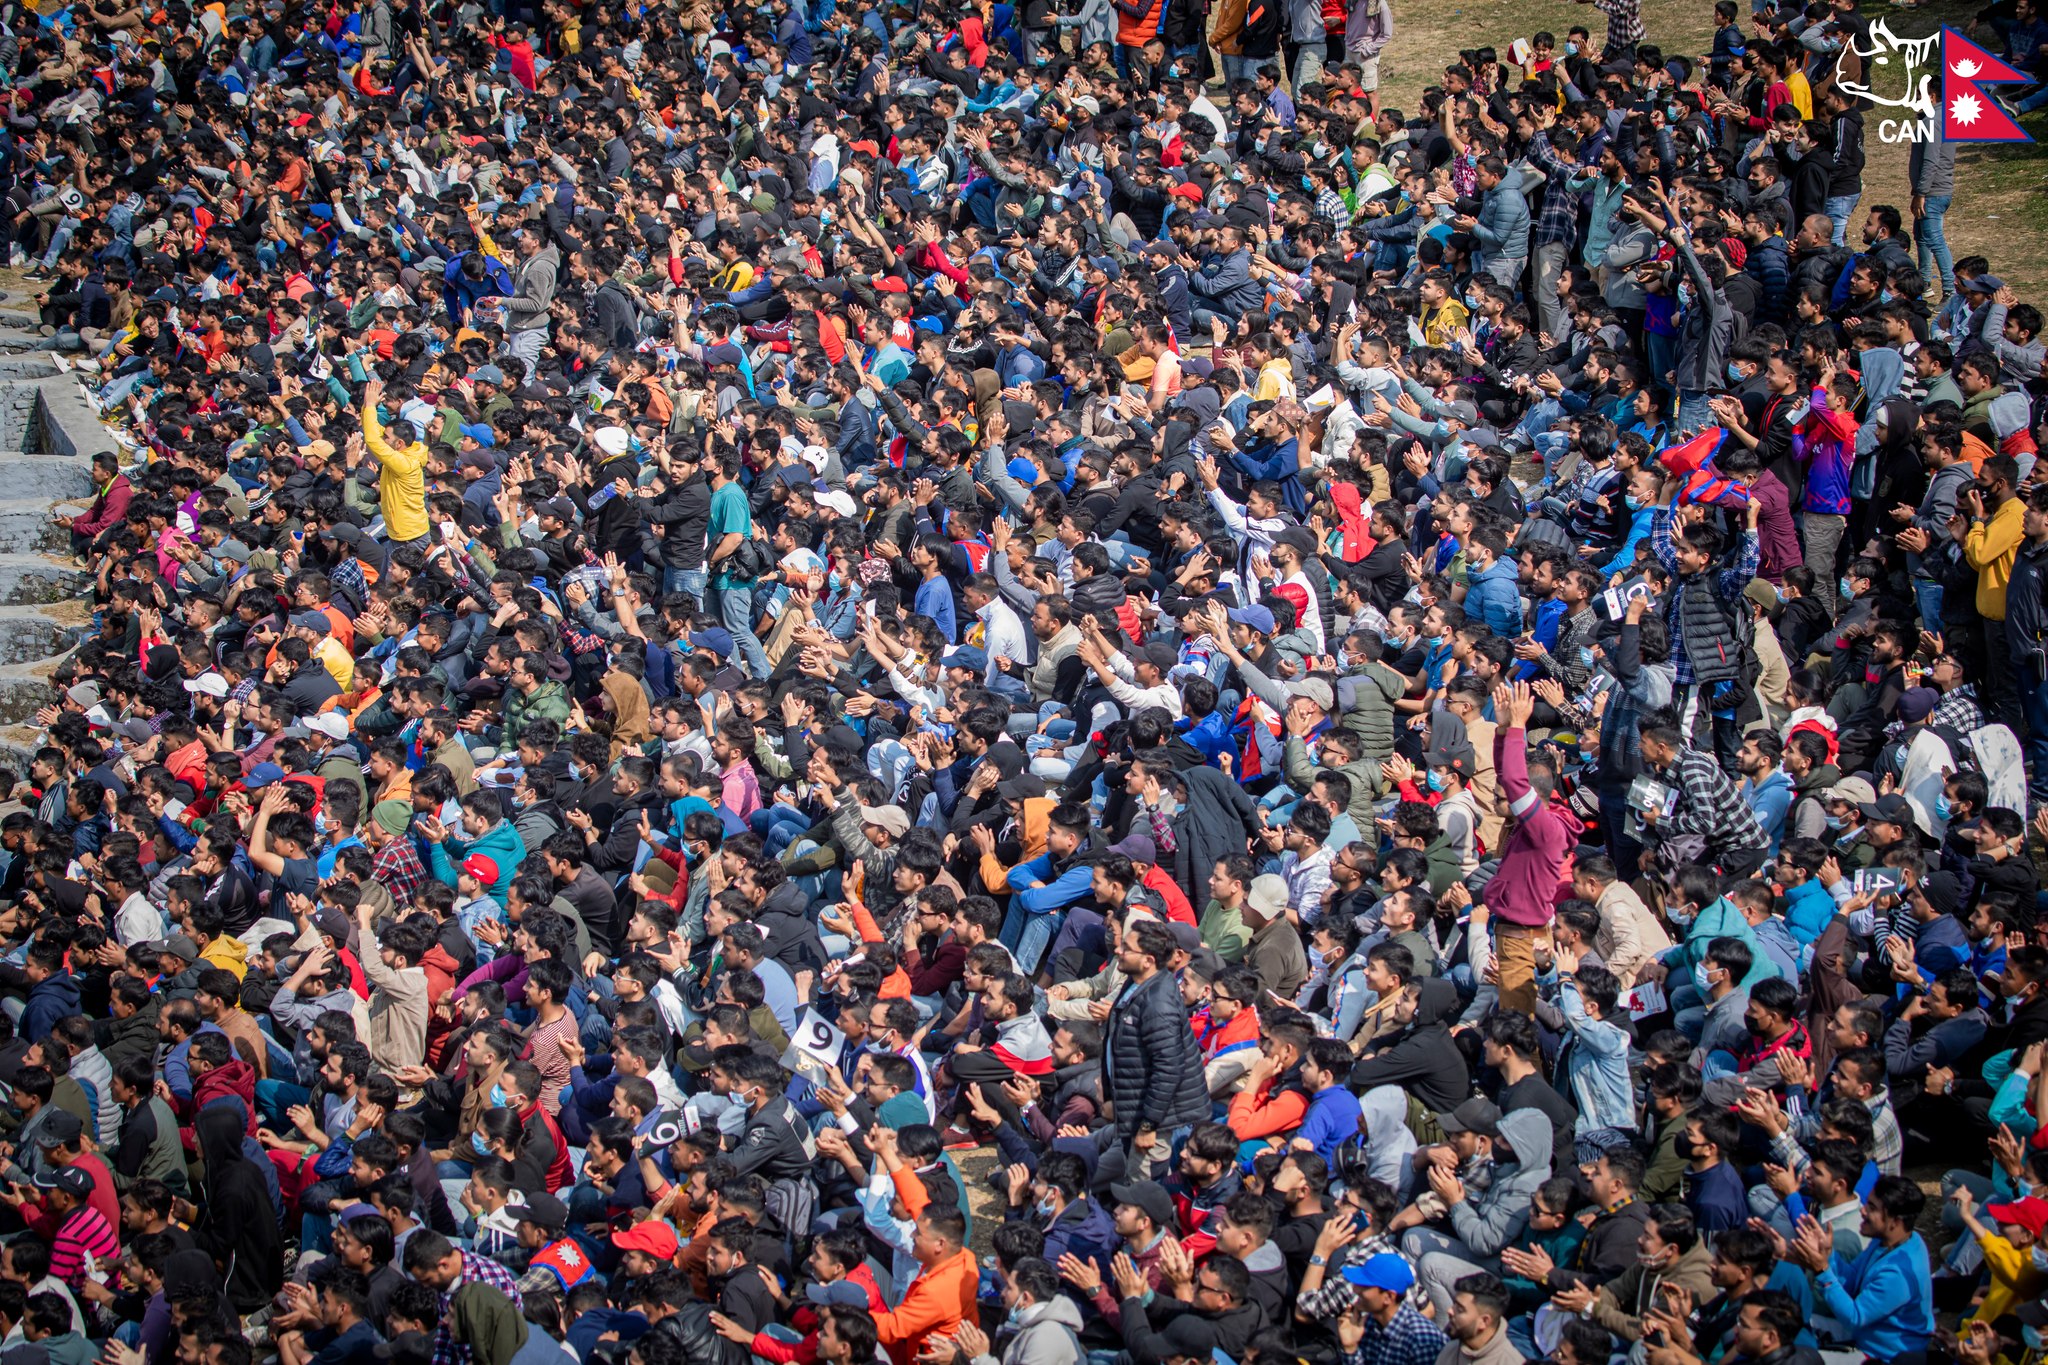 nepal cricket fans tu ground